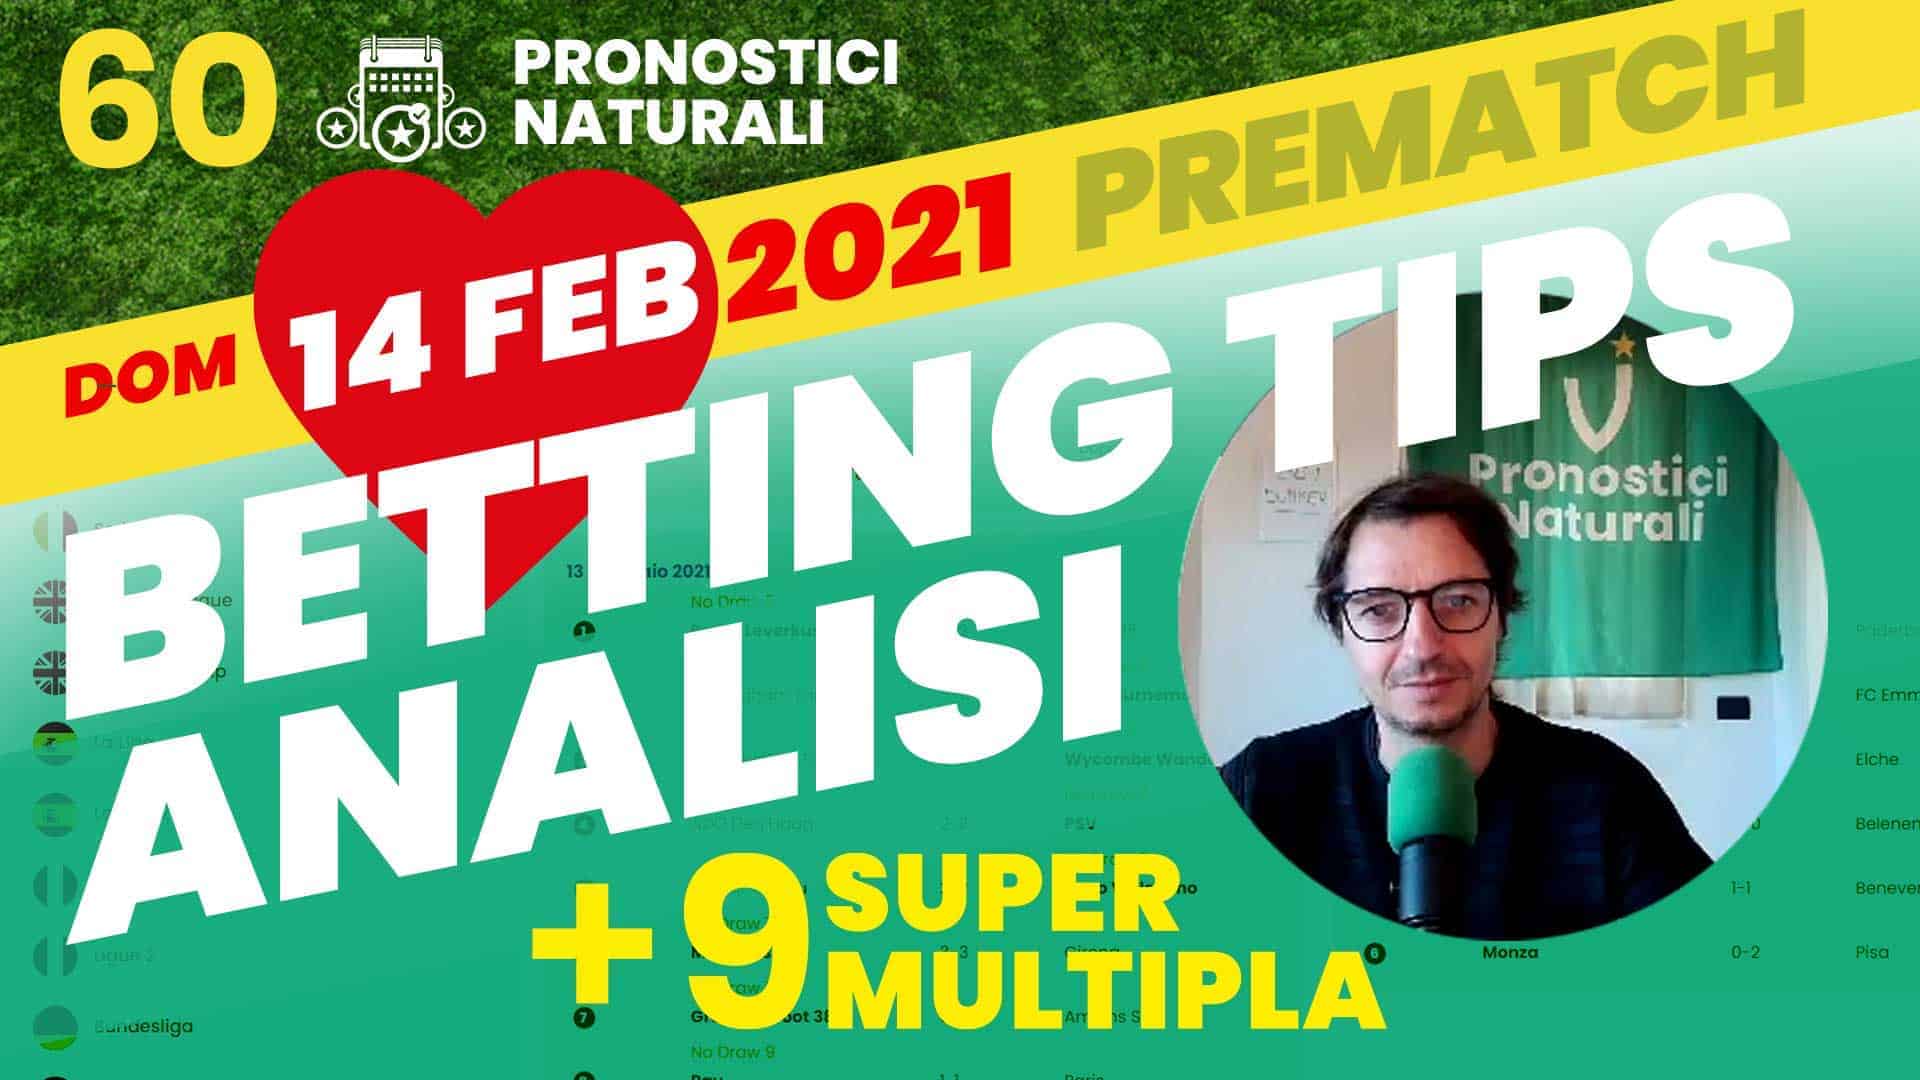 Pronostici Naturali Video Analisi Scommesse Betting Calcio Pre Partite SuperMultipla9 Domenica 14 Febbraio 2021